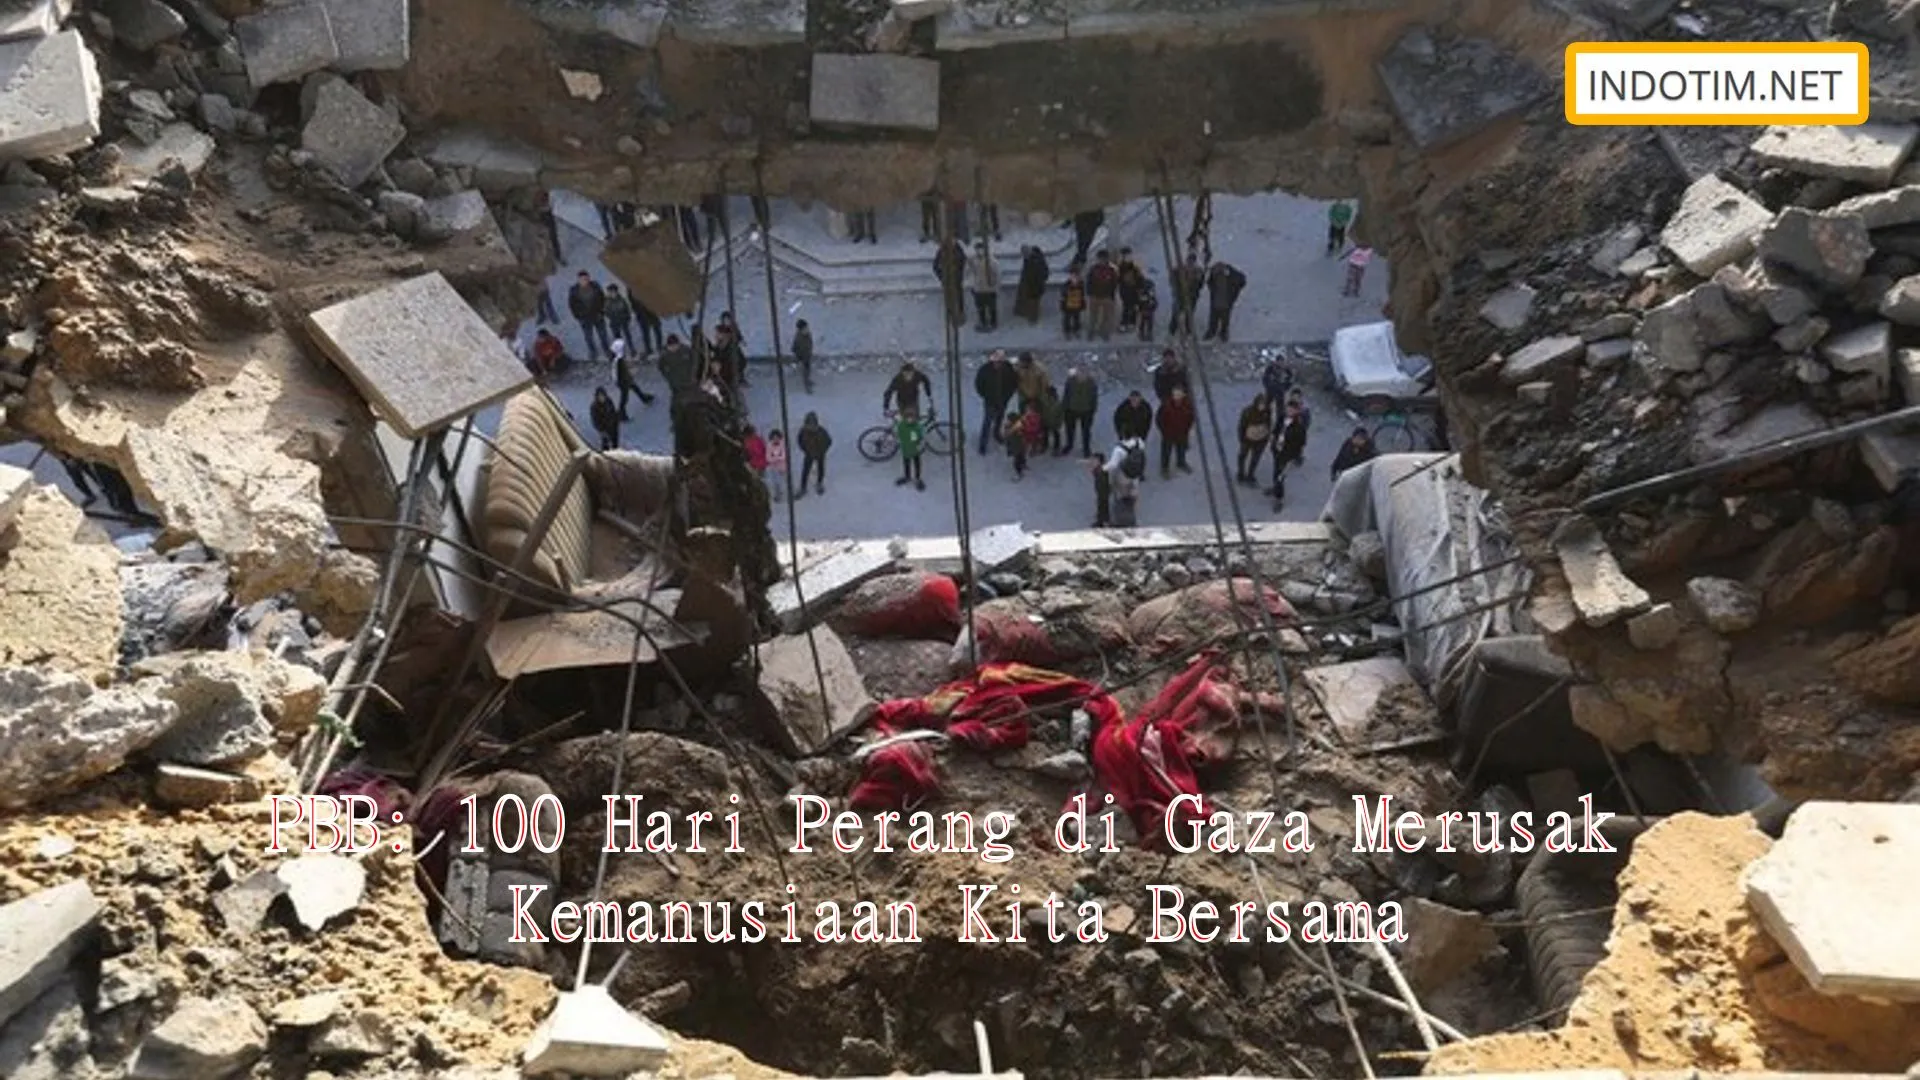 PBB: 100 Hari Perang di Gaza Merusak Kemanusiaan Kita Bersama